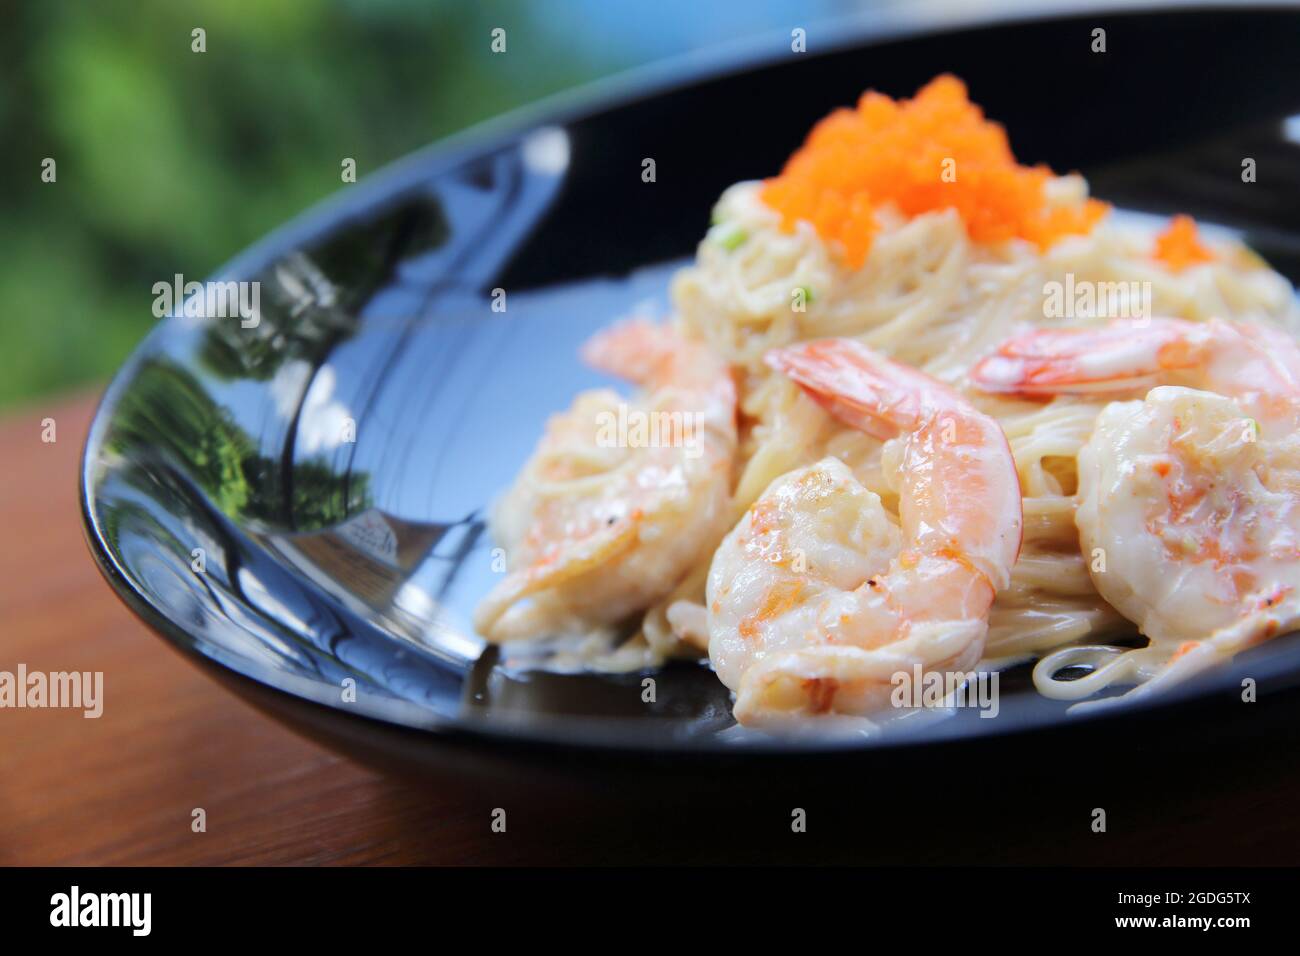 Shrimp spaghetti with white sacue Stock Photo